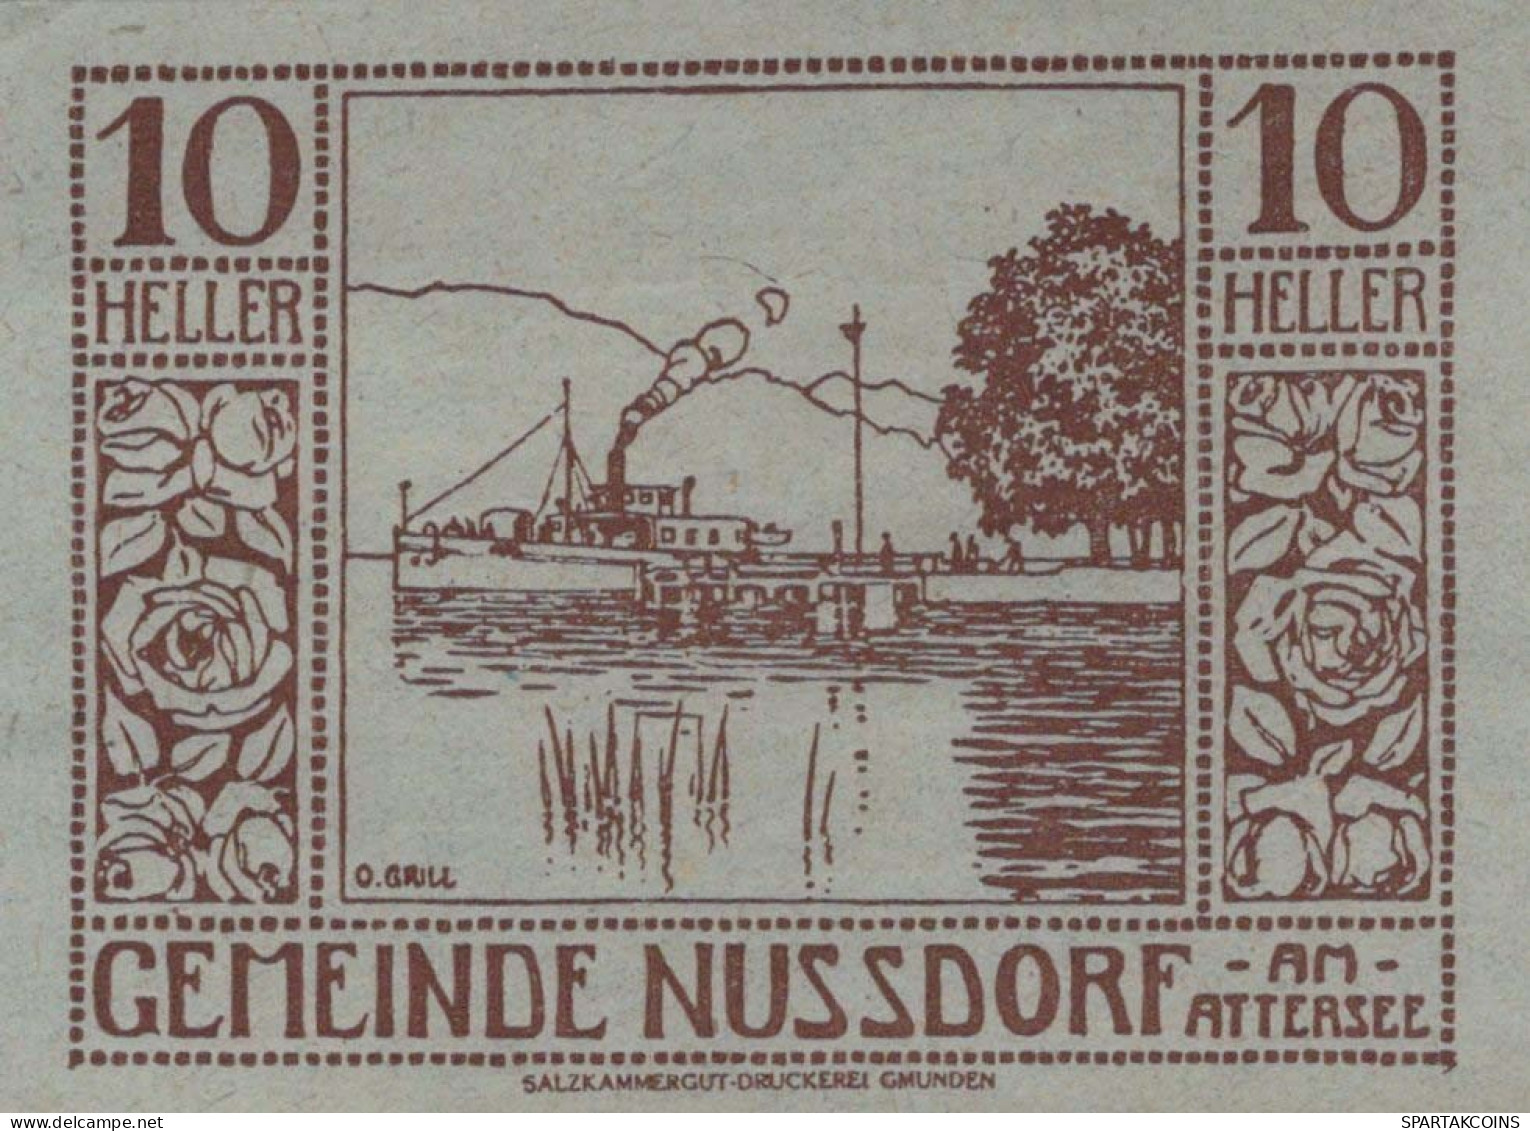 10 HELLER 1920 Stadt NUSSDORF AM ATTERSEE Oberösterreich Österreich Notgeld Papiergeld Banknote #PG958 - [11] Local Banknote Issues